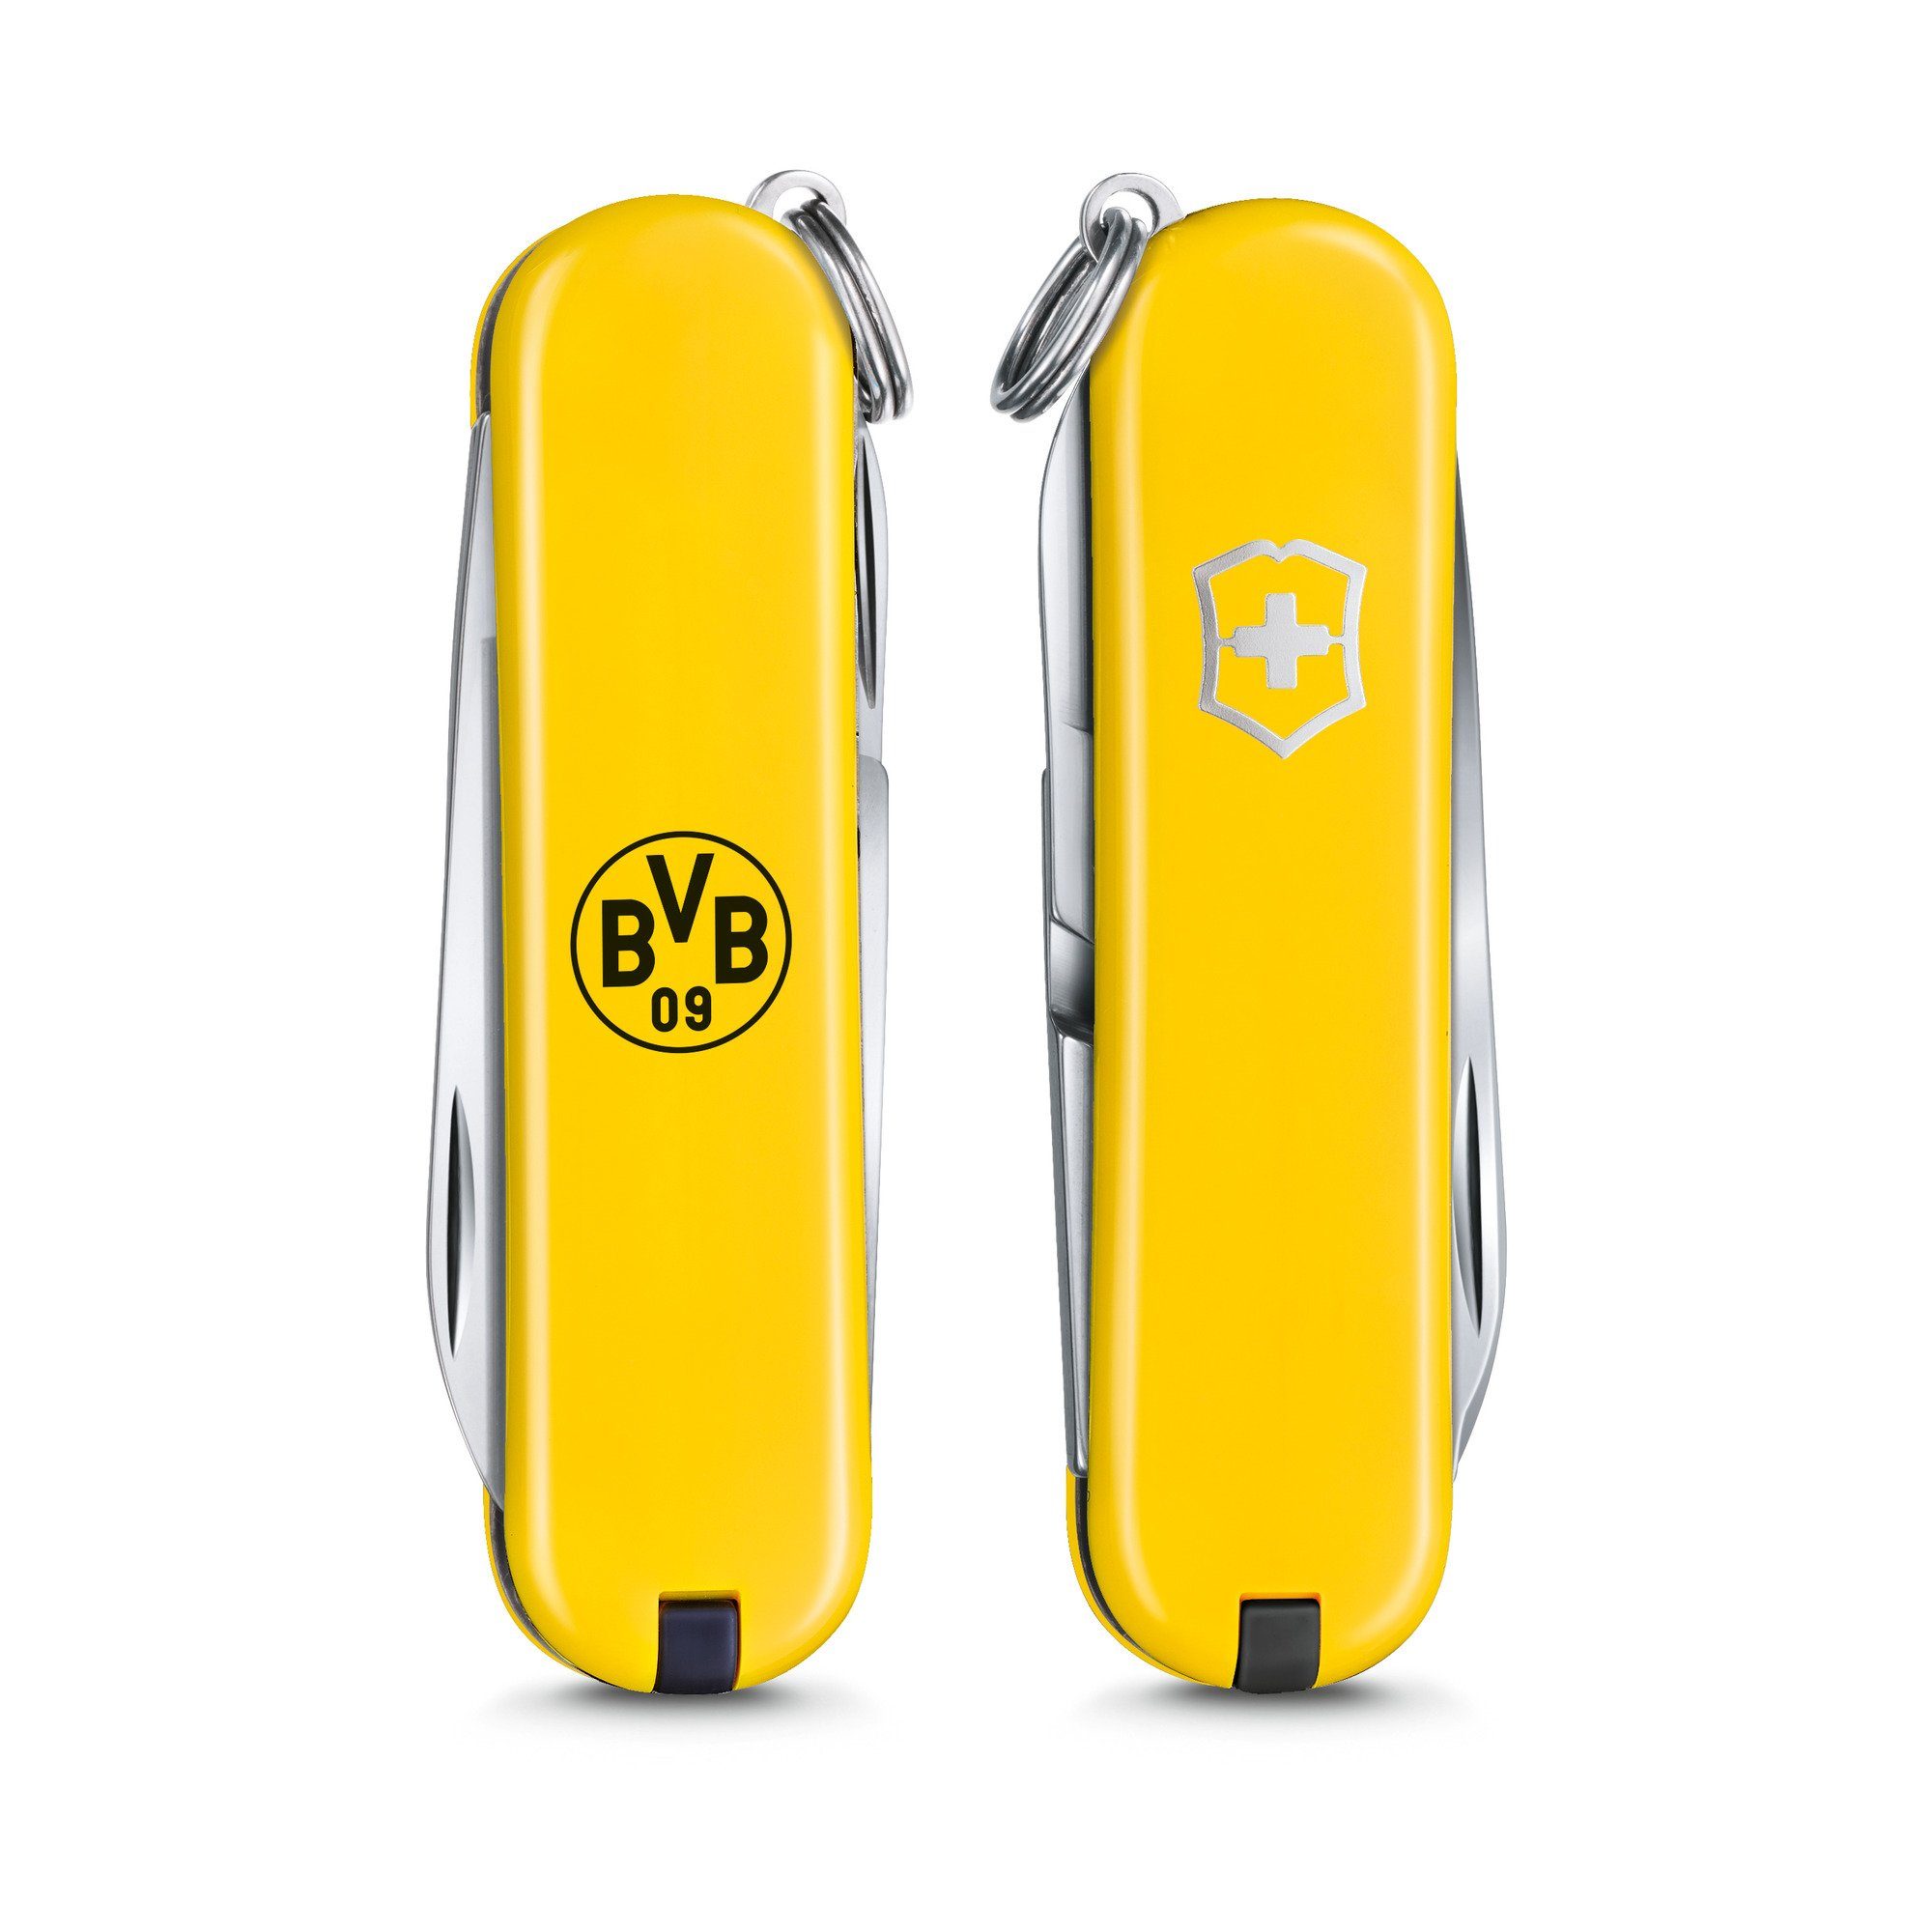 BVB SD Victorinox Classic Taschenmesser Messer Borussia-Dortmund-Design gelb